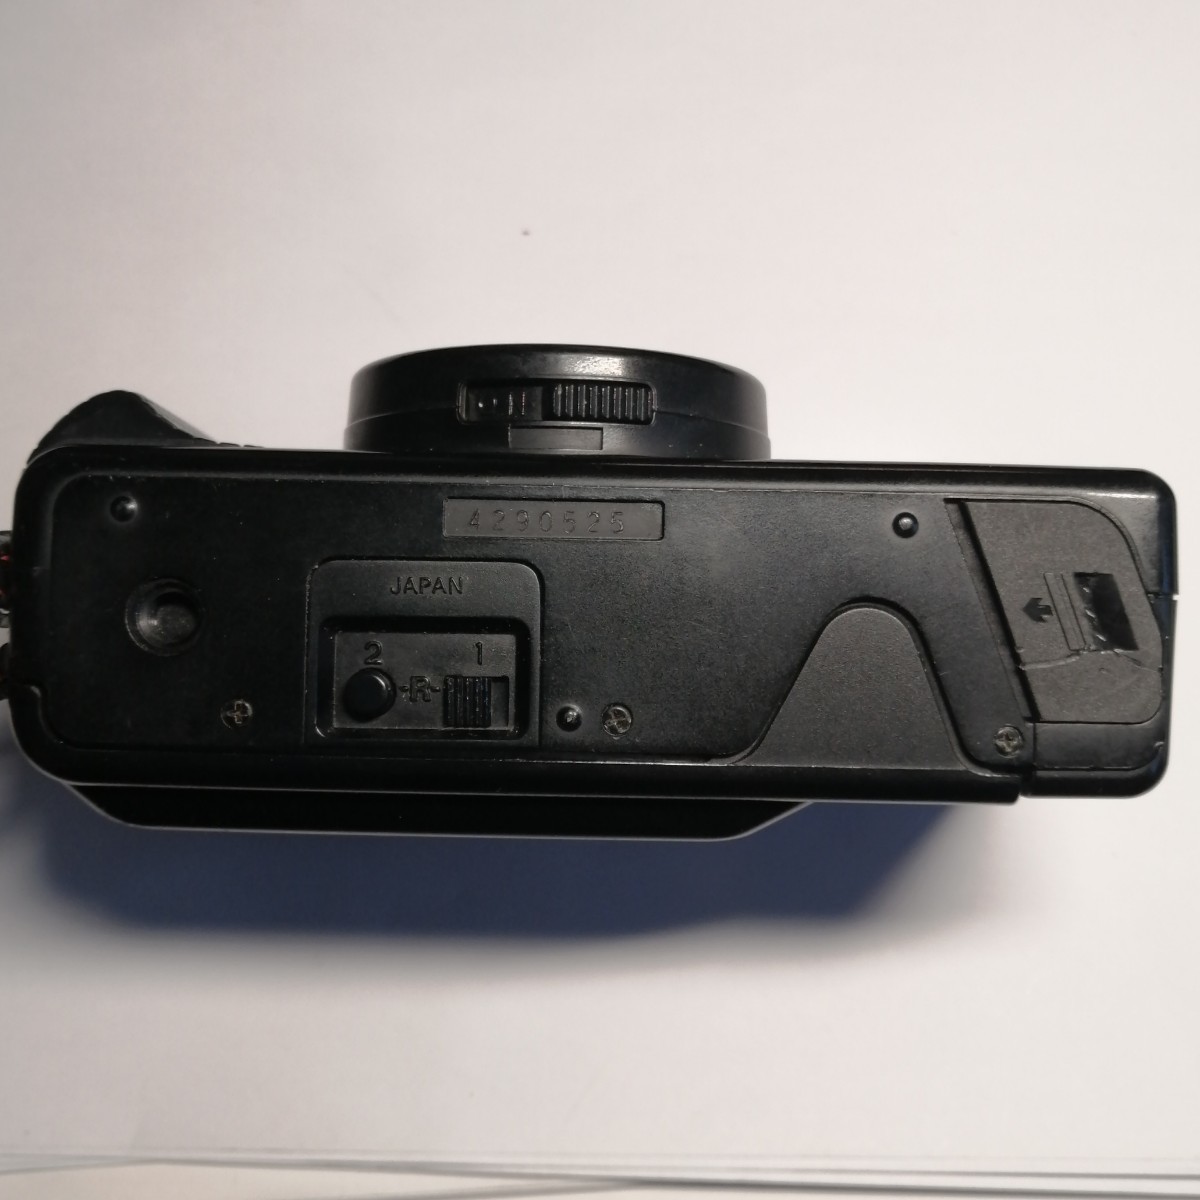 完動美品 Nikon L35AD2 ピカイチ #525 コンパクトフィルムカメラ